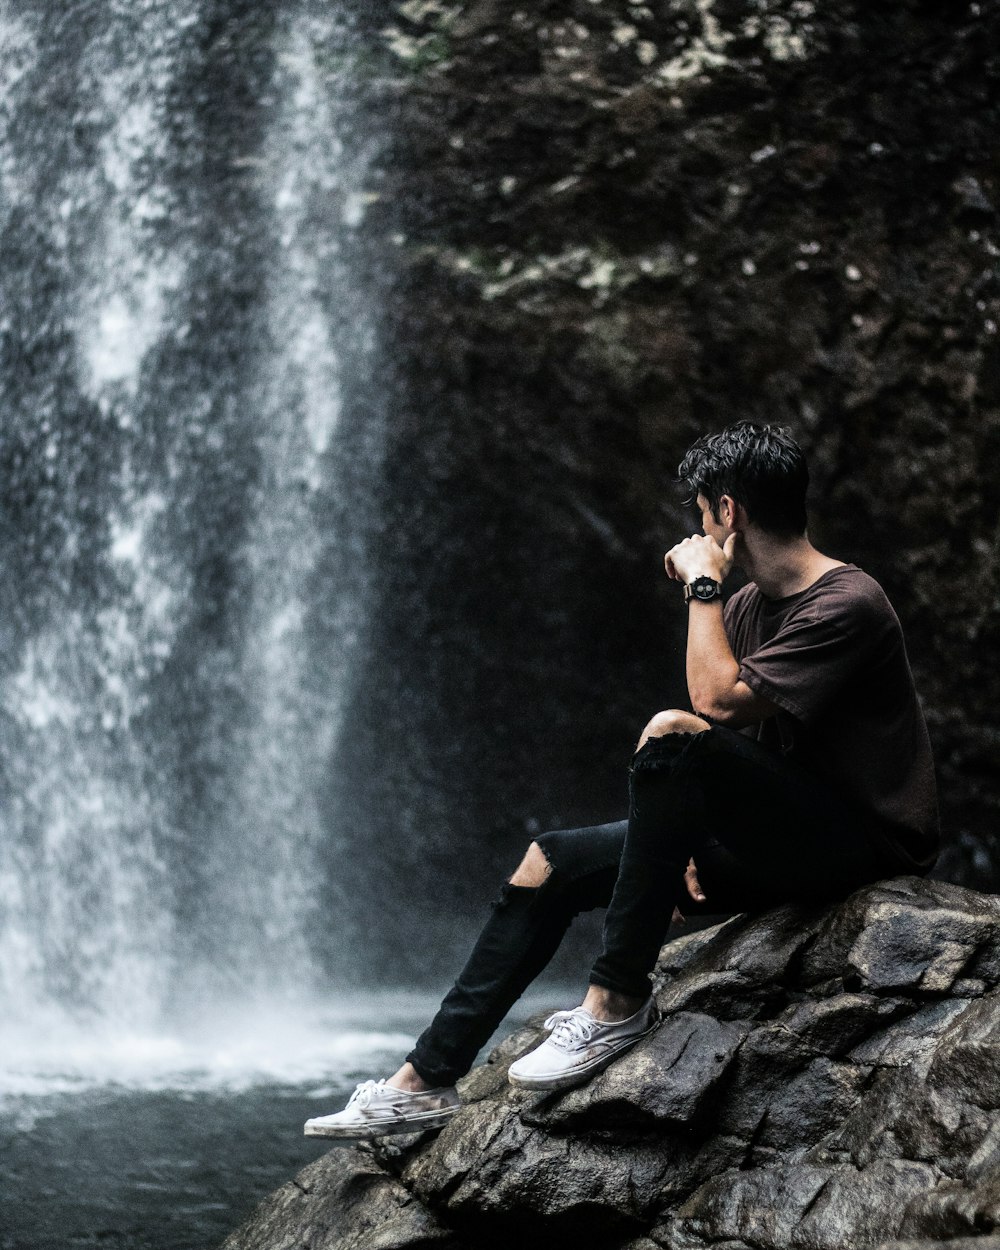 Mann sitzt in der Nähe von Wasserfällen